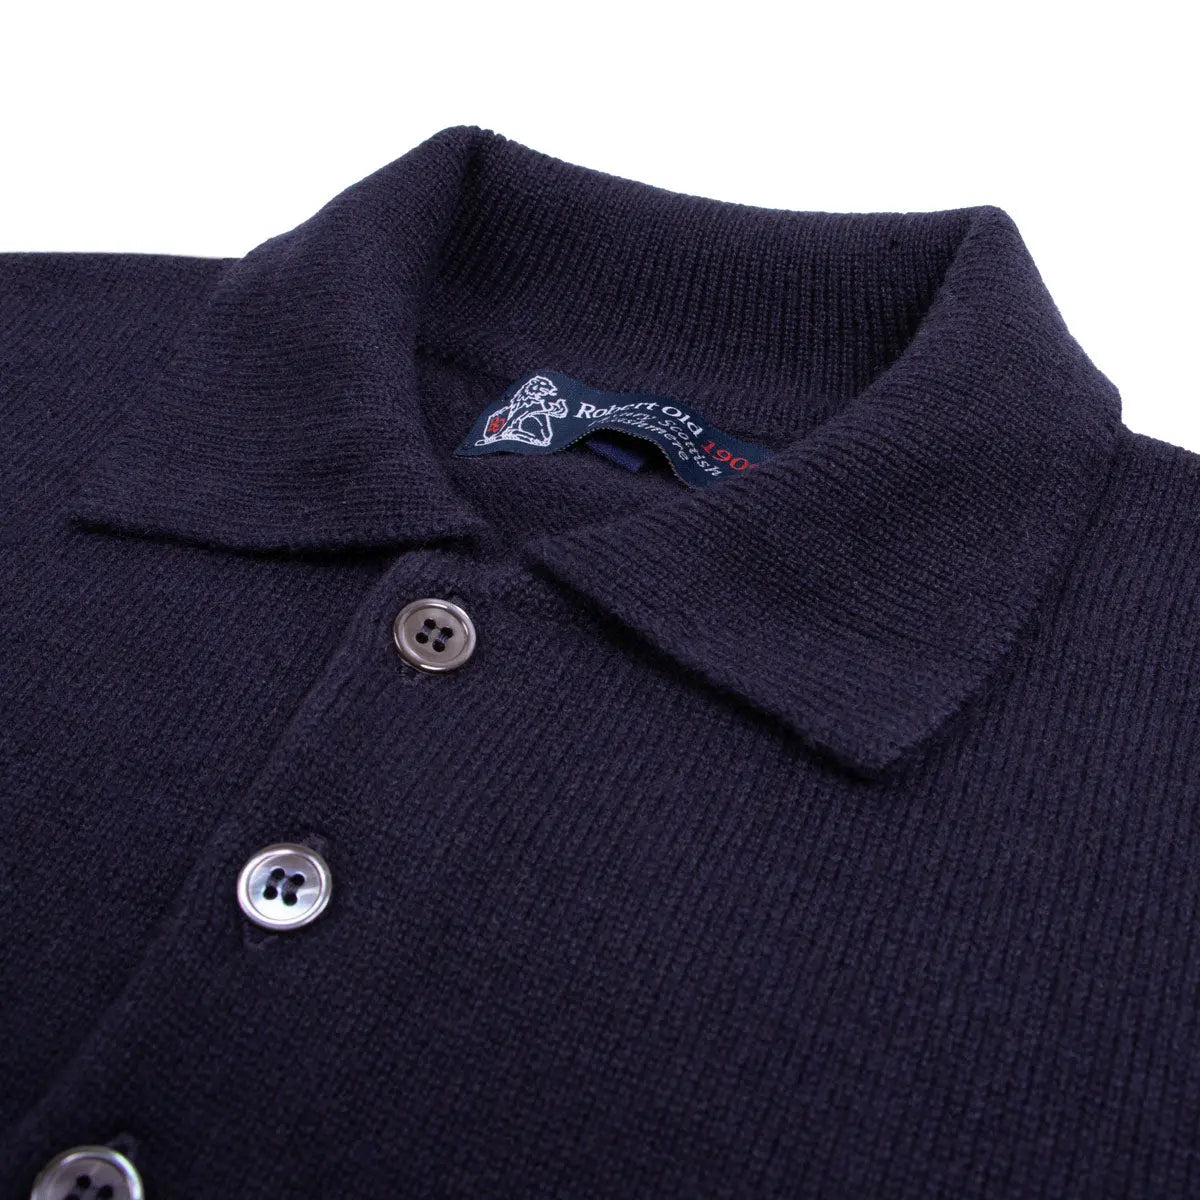 Dark Navy Balvenie 3 Button 4ply Cashmere Polo Sweater Robert Old